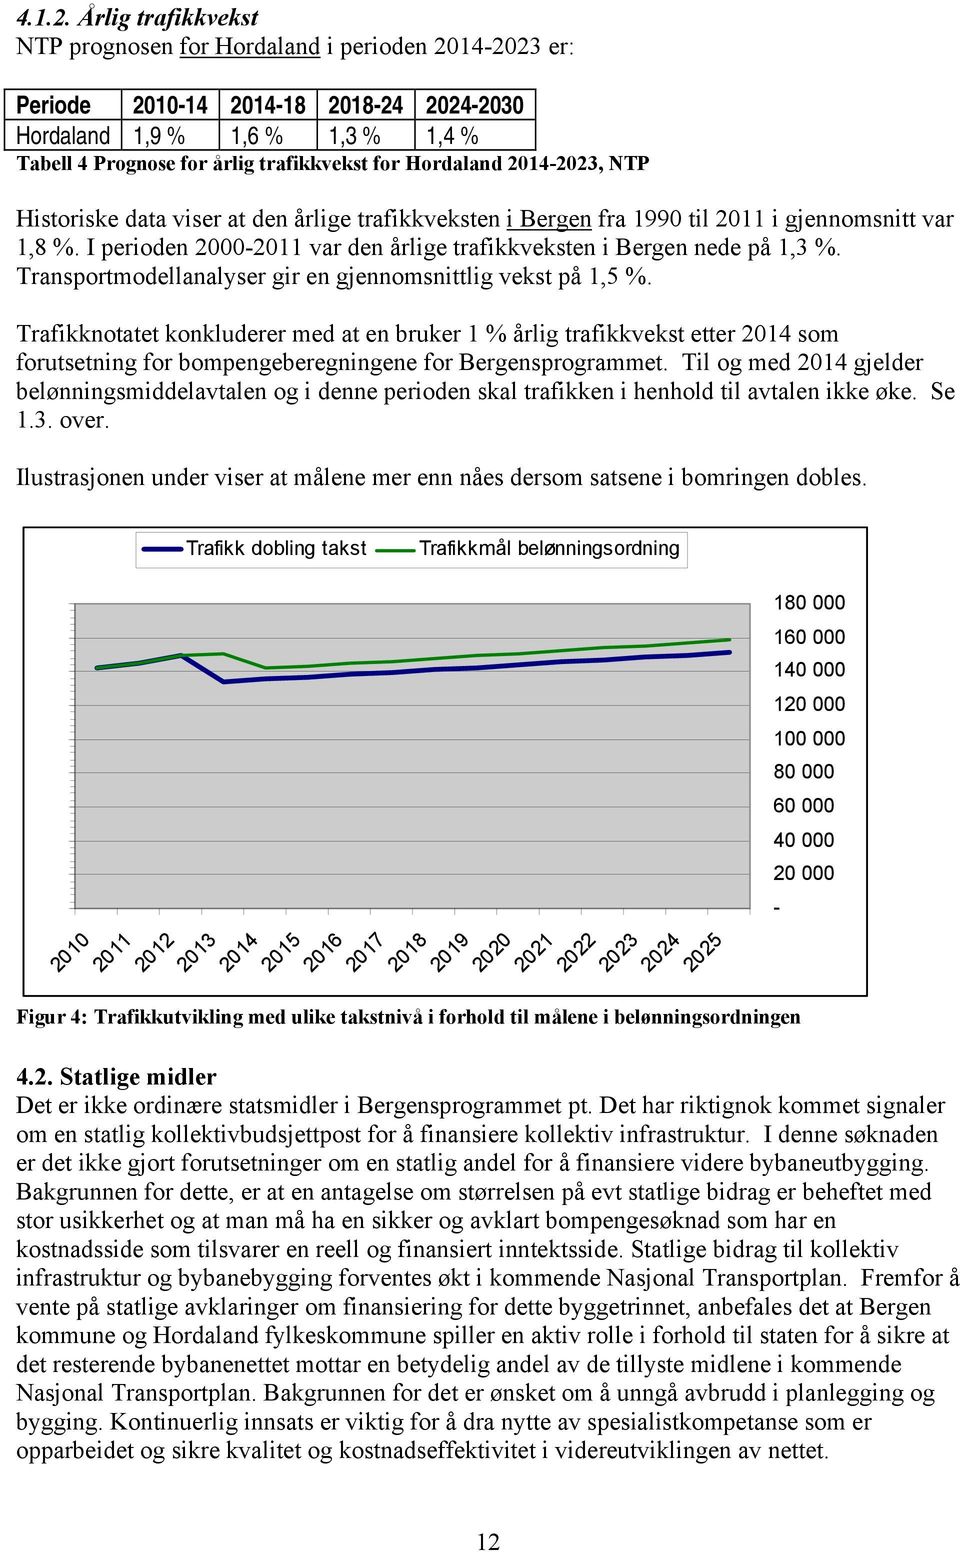 2014-2023, NT Historiske data viser at den årlige trafikkveksten i Bergen fra 1990 til 2011 i gjennomsnitt var 1,8 %. I perioden 2000-2011 var den årlige trafikkveksten i Bergen nede på 1,3 %.